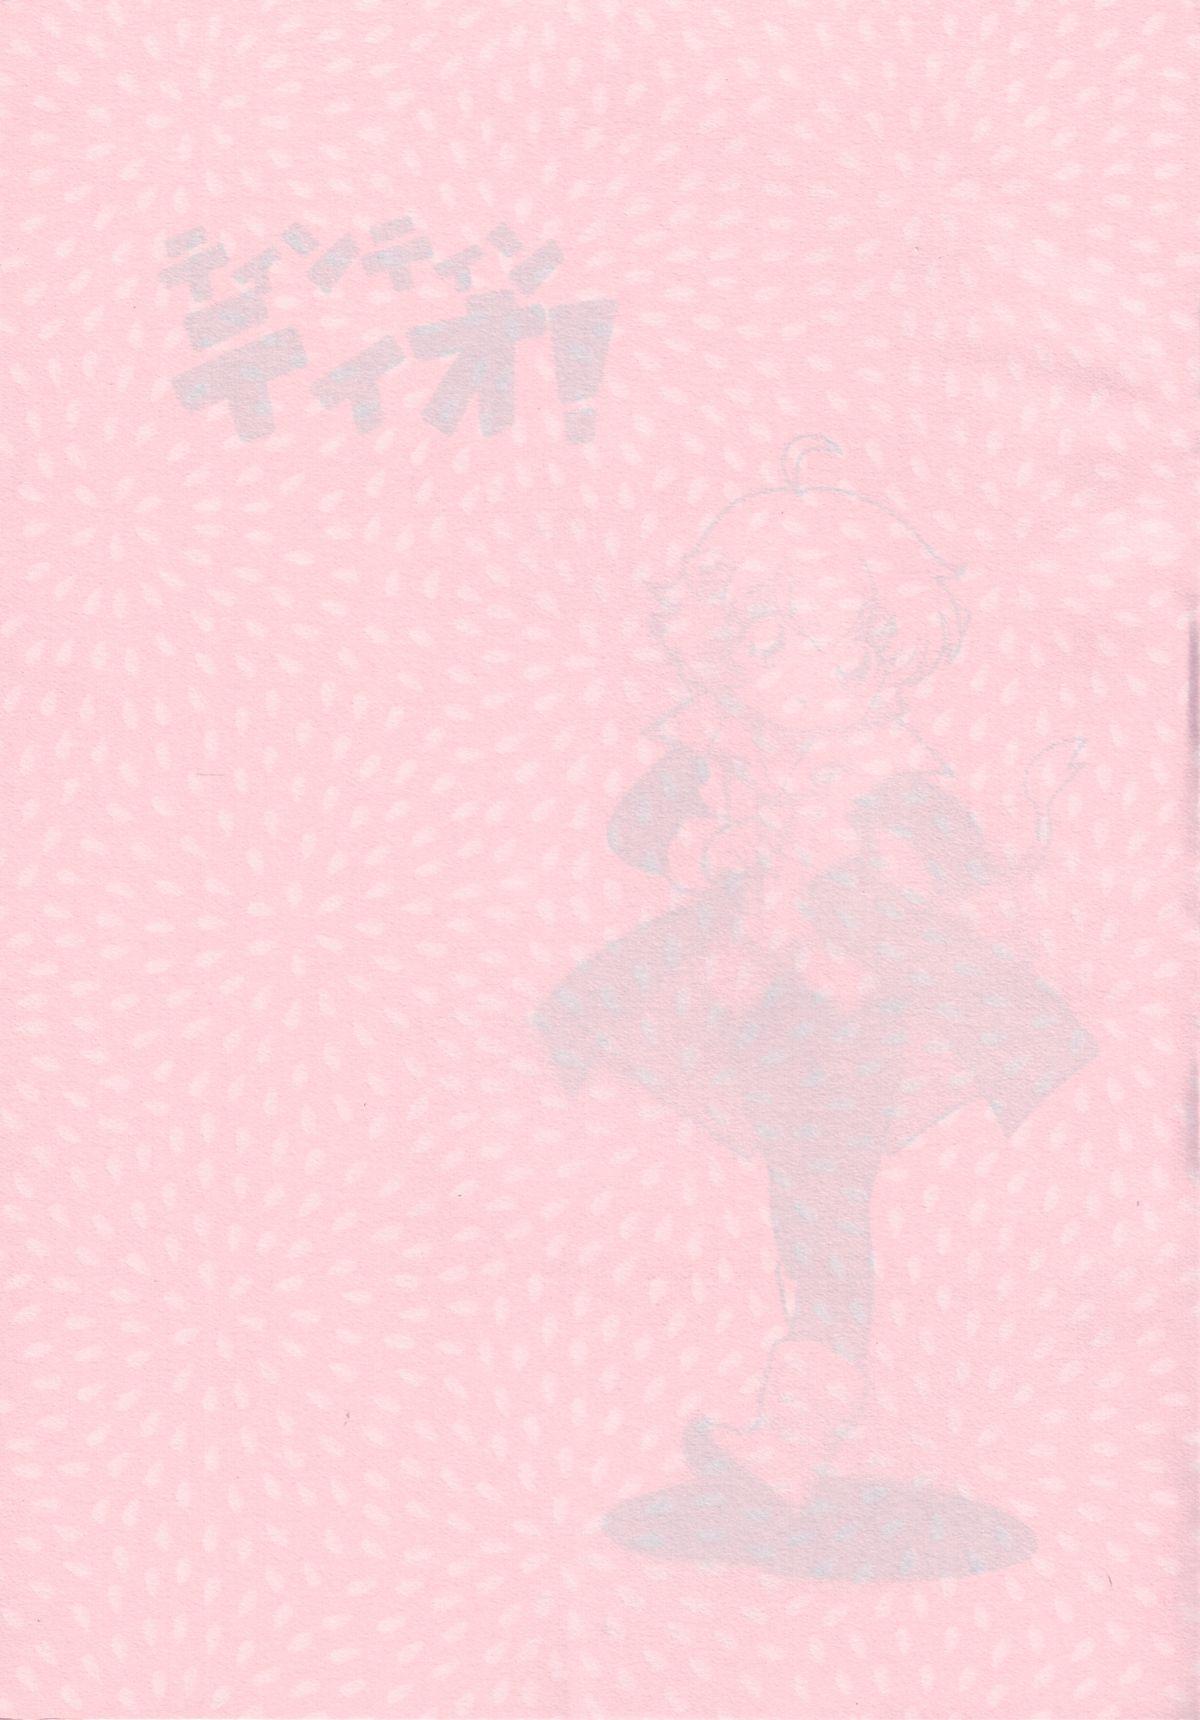 (Shota Collection 05) [Tokuda (Ueda Yuu)) Tin Tin Tio! (Fushigi Boshi no Futago Hime) [English] 1